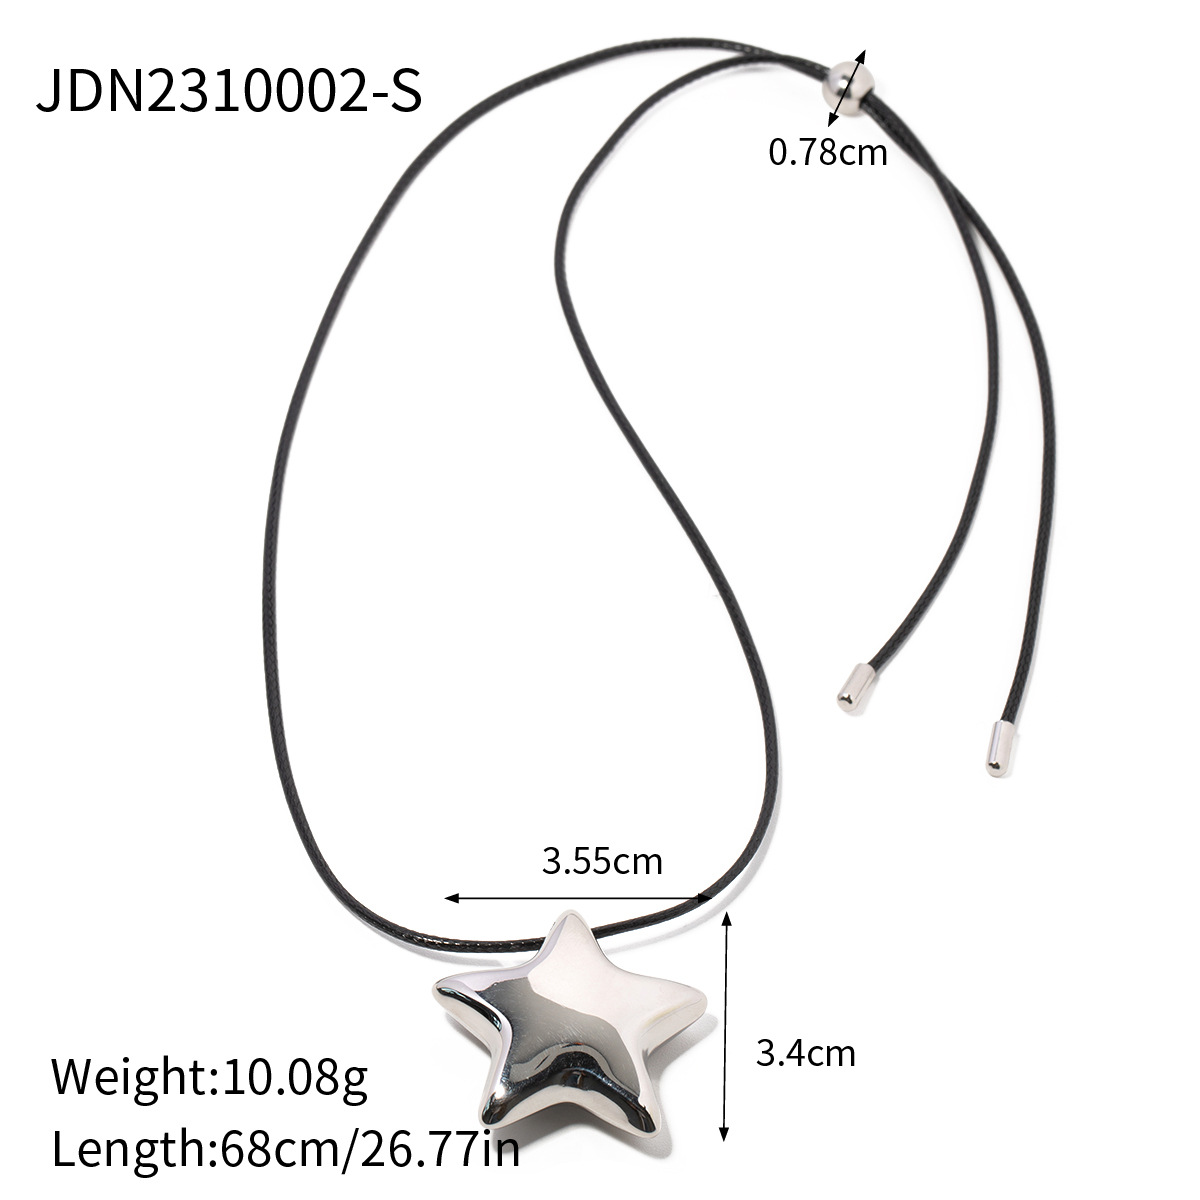 2:JDN2310002-S